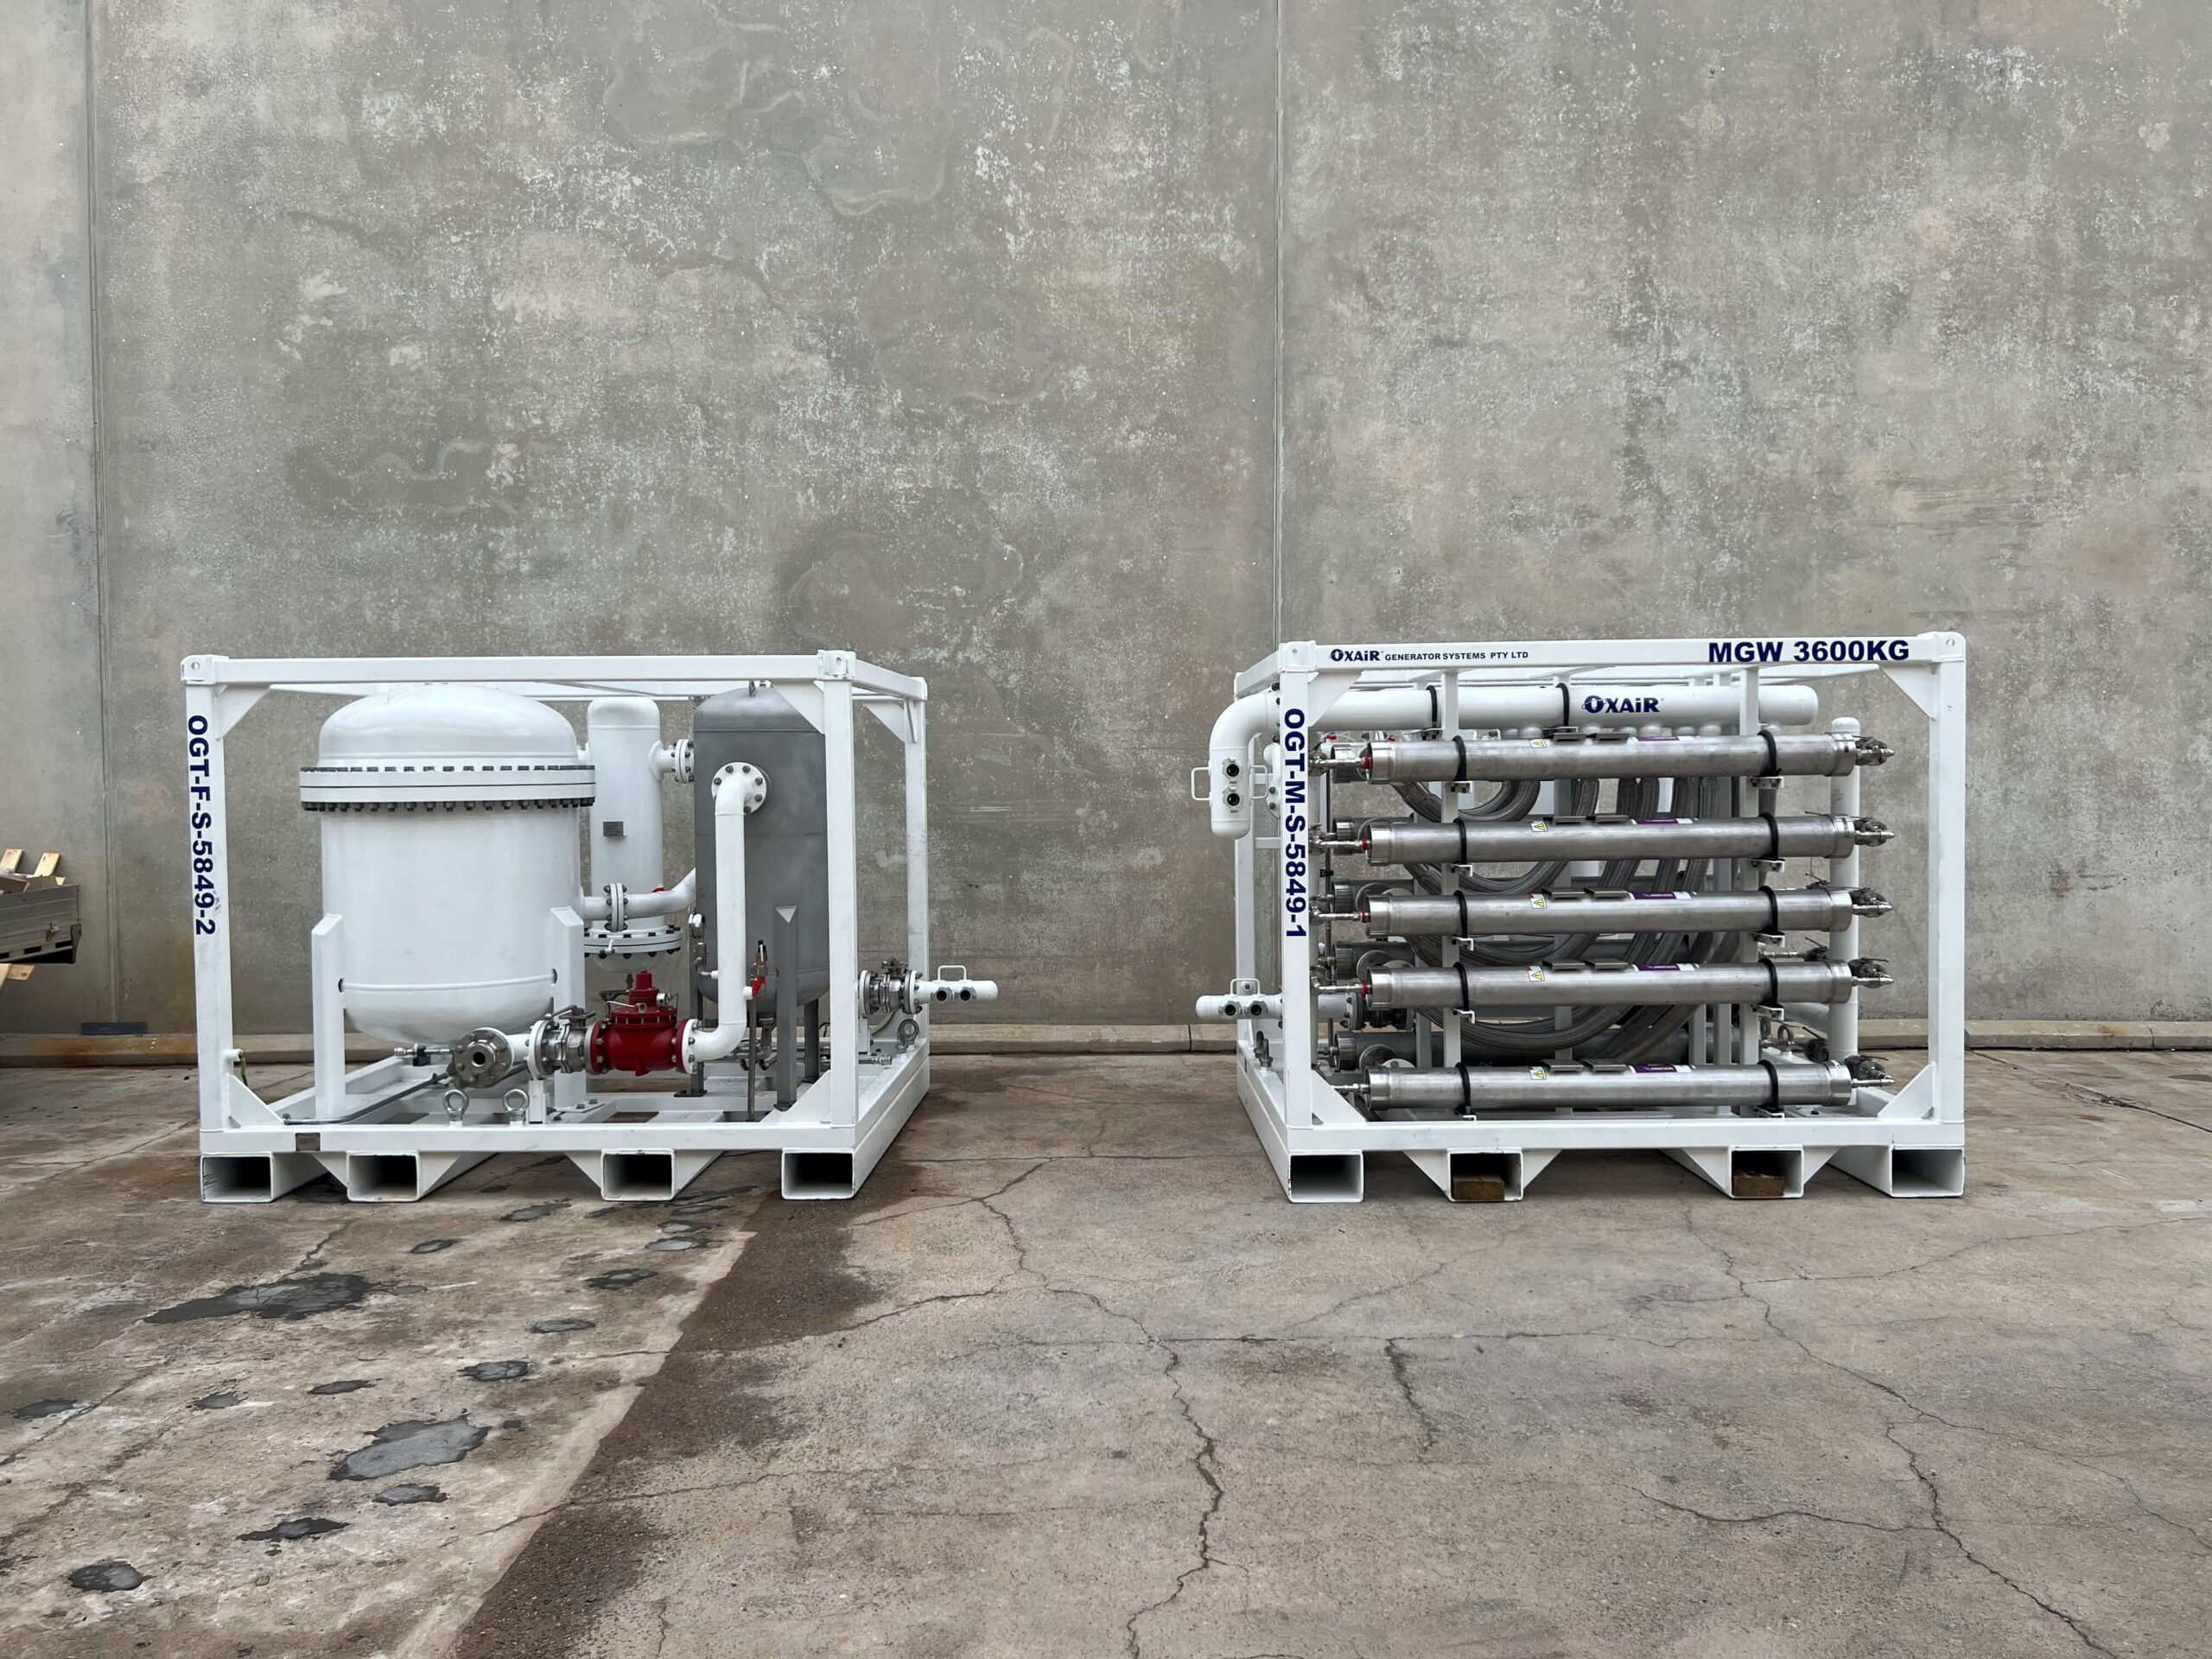 Oxair's underground rental nitrogen generator